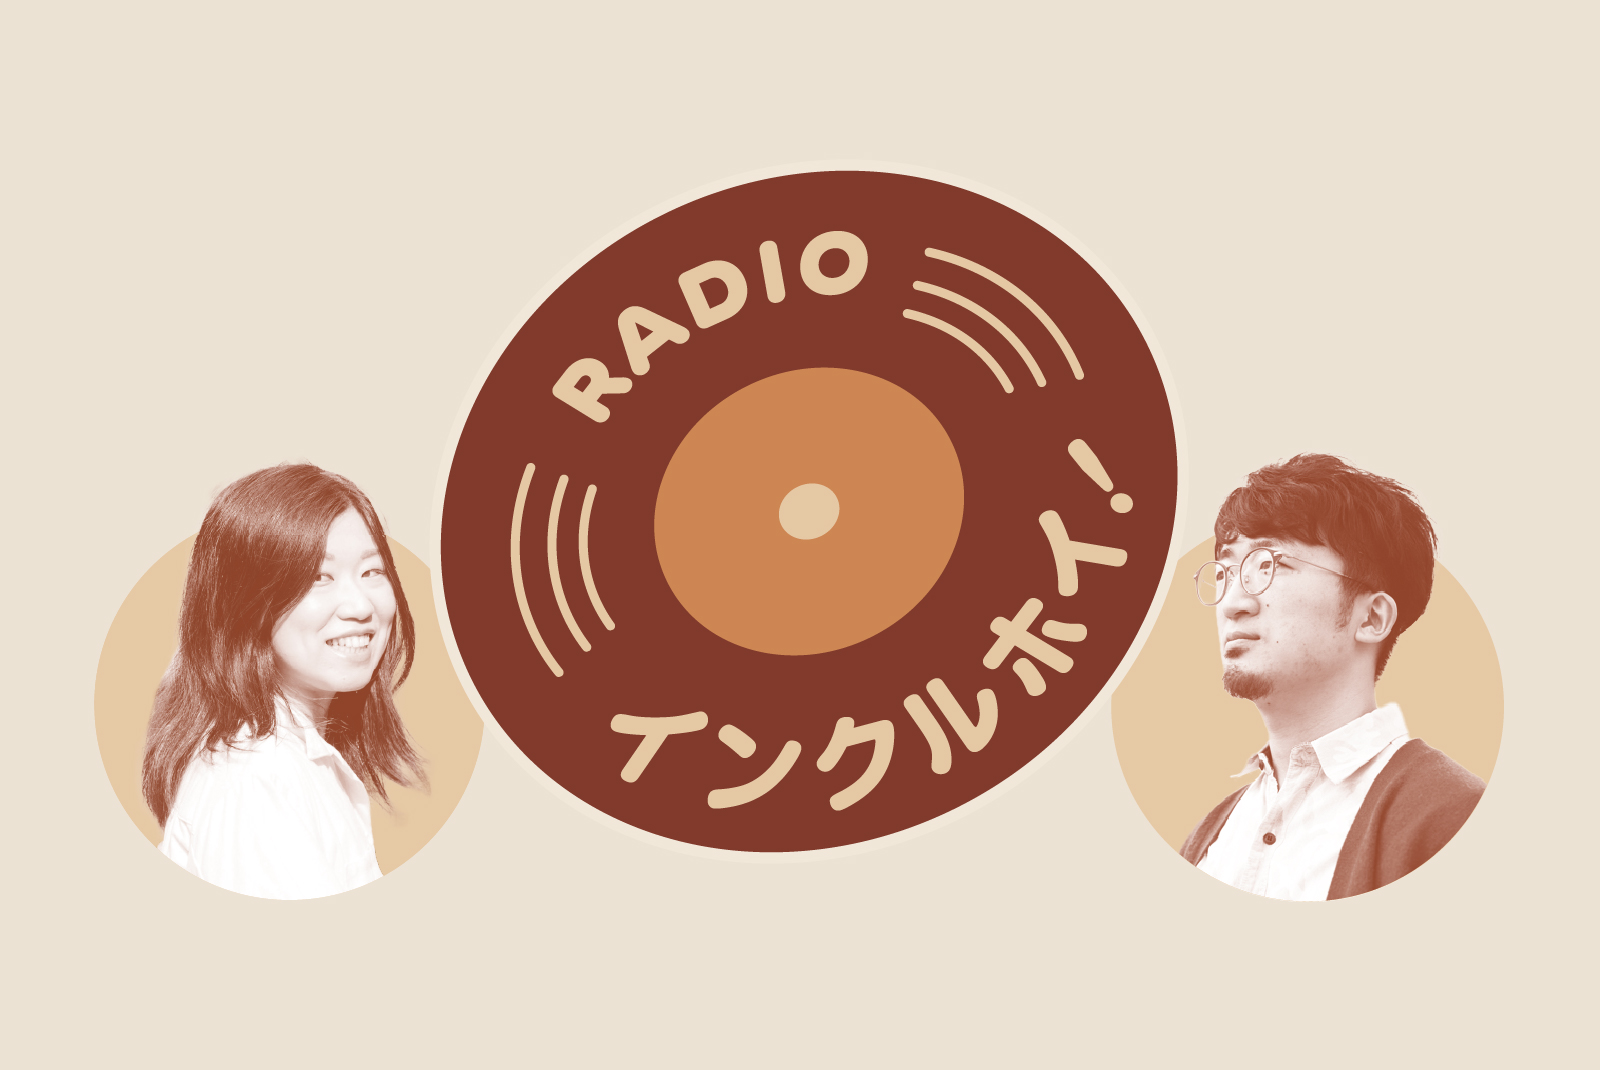 レコード状のRADIOインクルホイ！のロゴと、ラジオパーソナリティの山田小百合さん（左）と、浅野翔さん（右）の写真